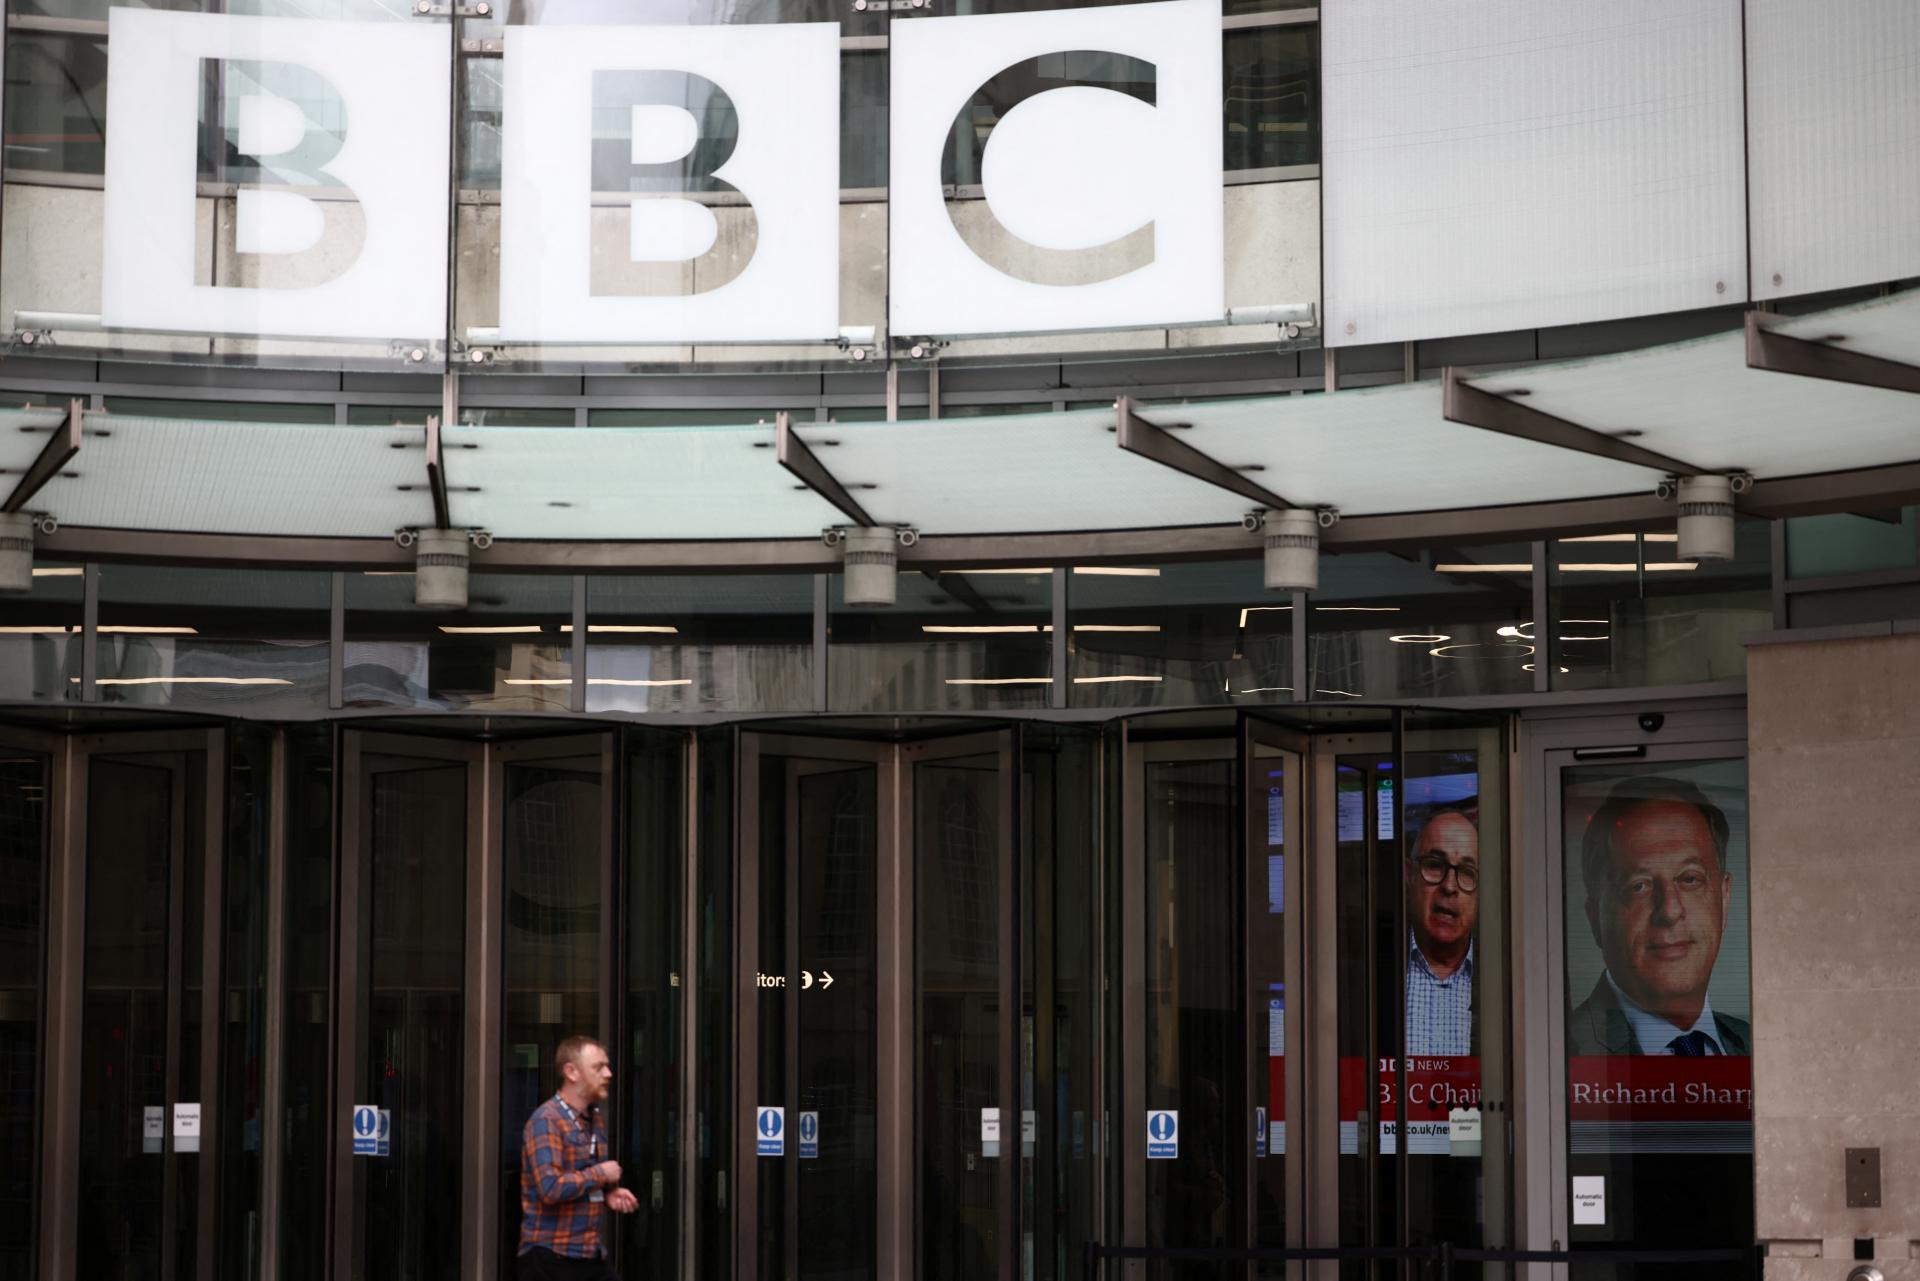 Šéf Rady BBC sa vzdal funkcie. Na pohovoroch nepriznal možný konflikt záujmov s britským expremiérom